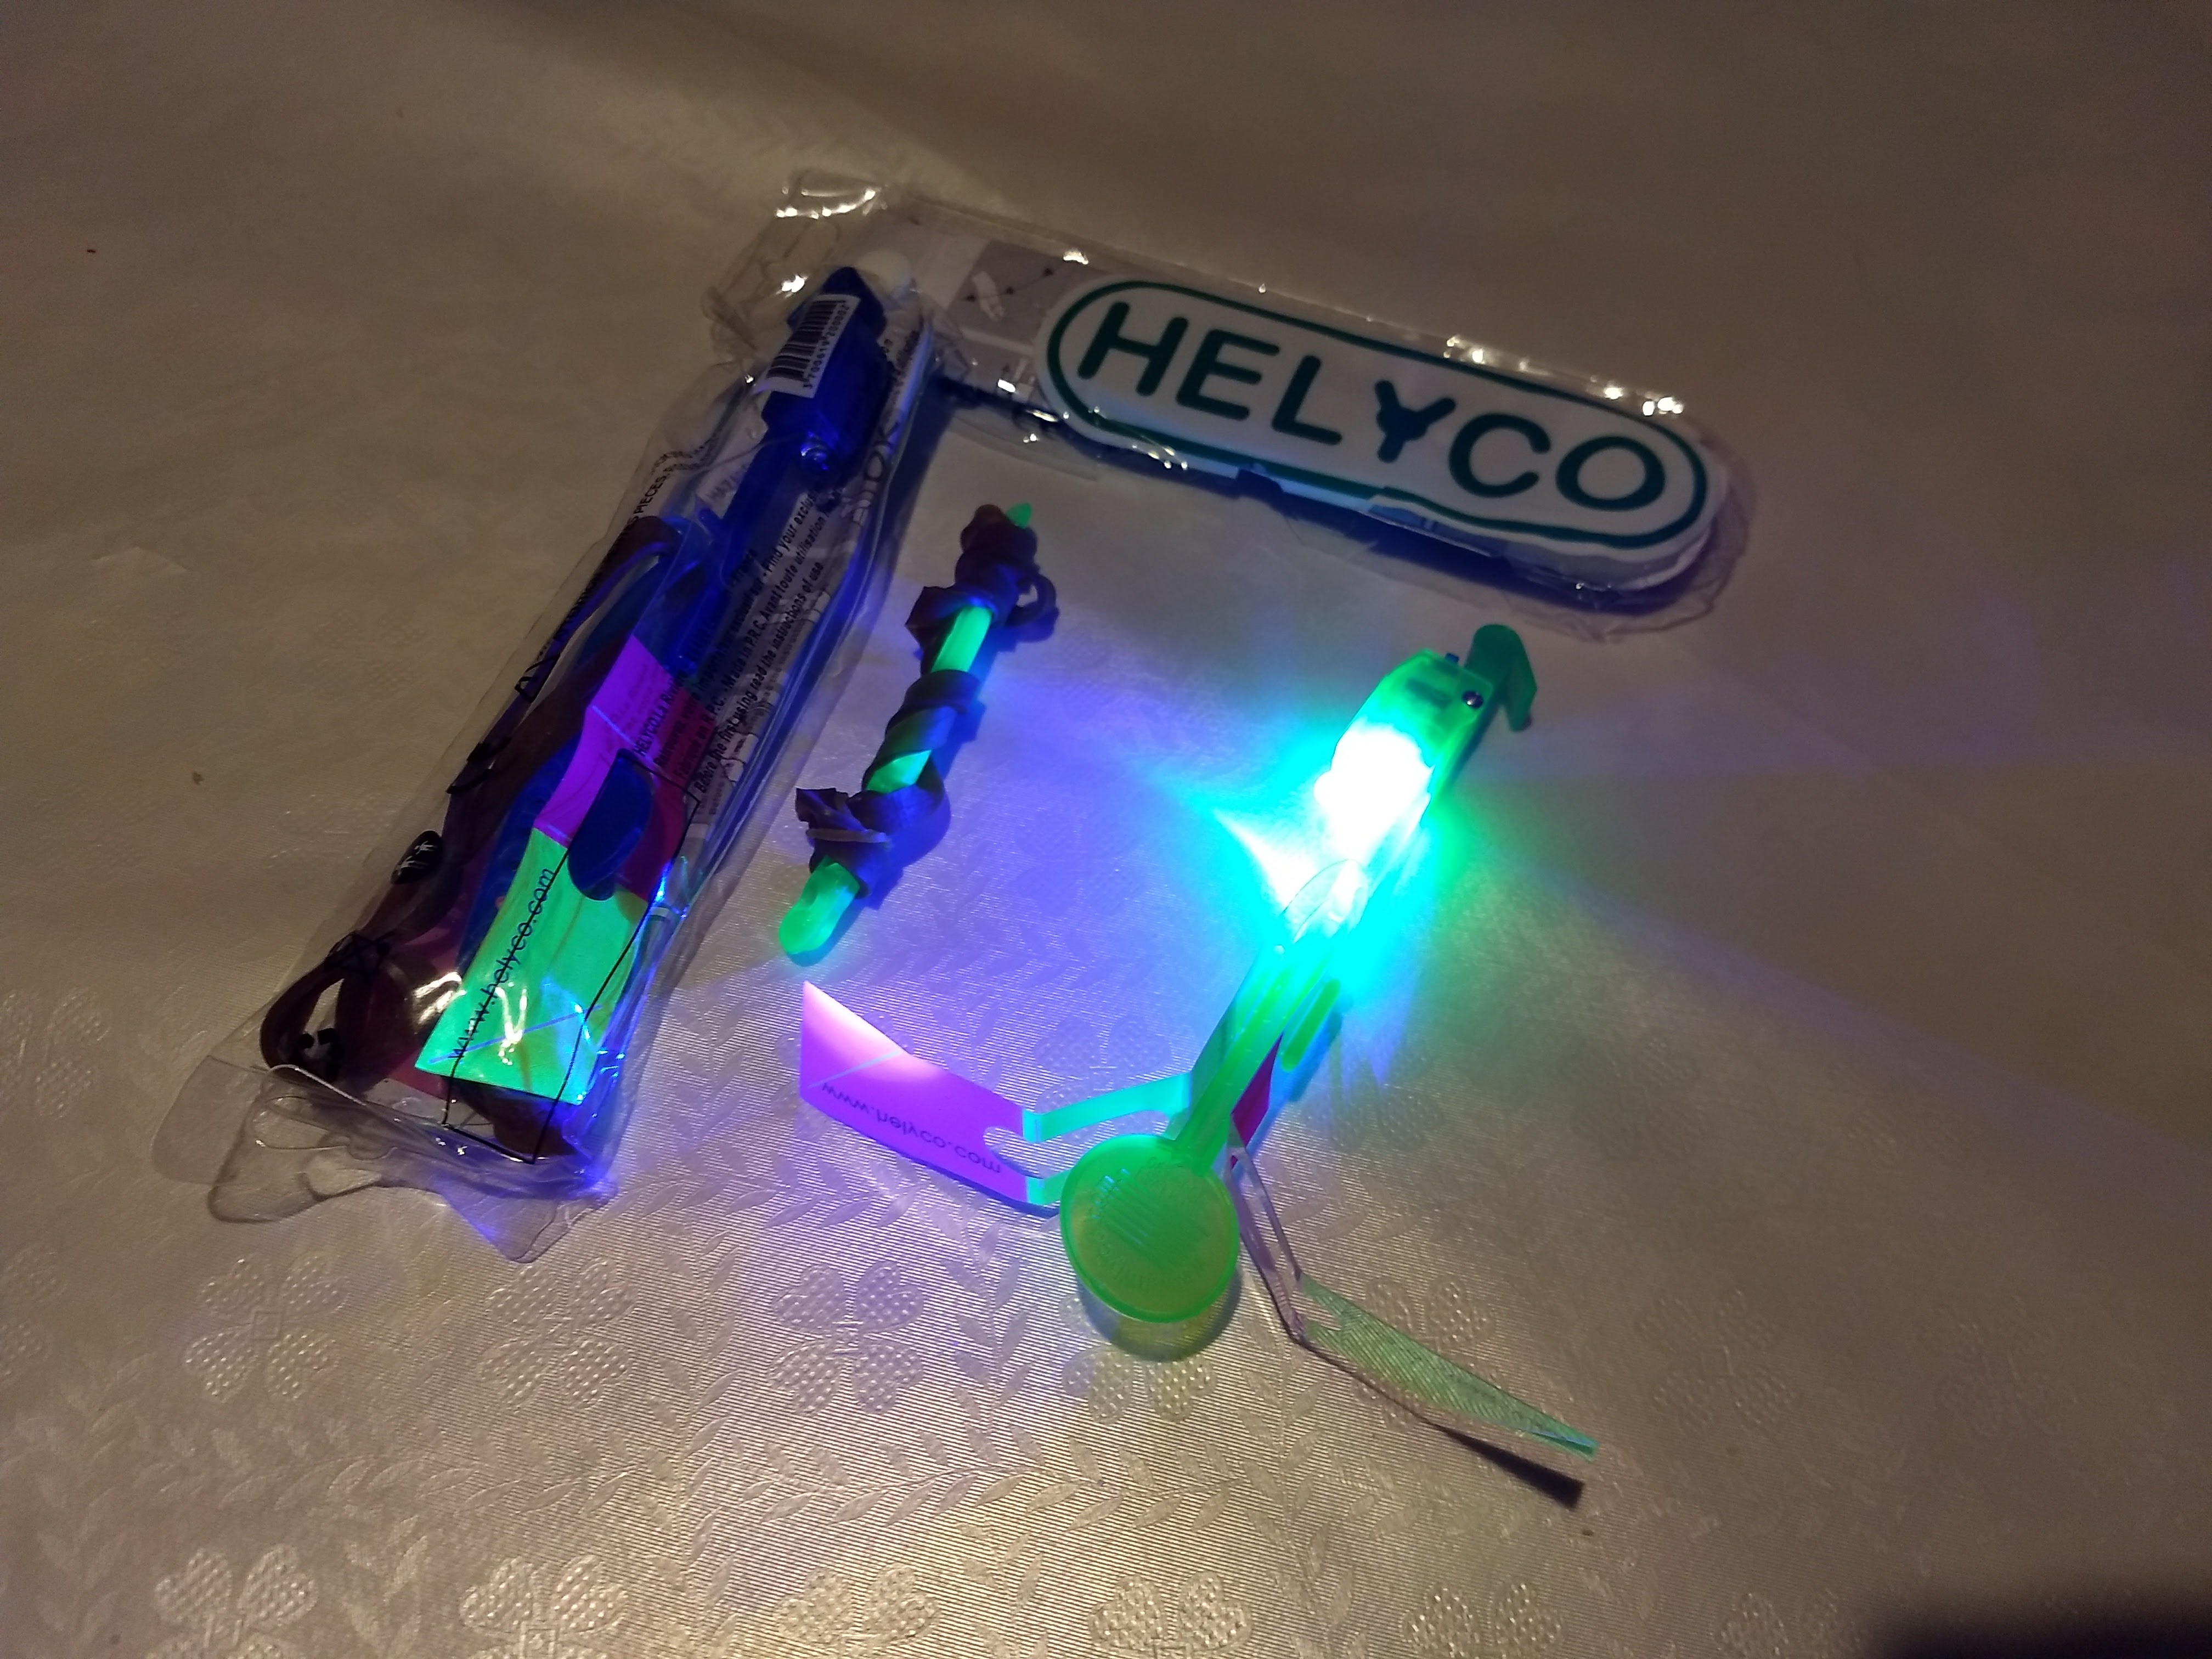 Helyco – ein leuchtender kleiner Wirbelwind